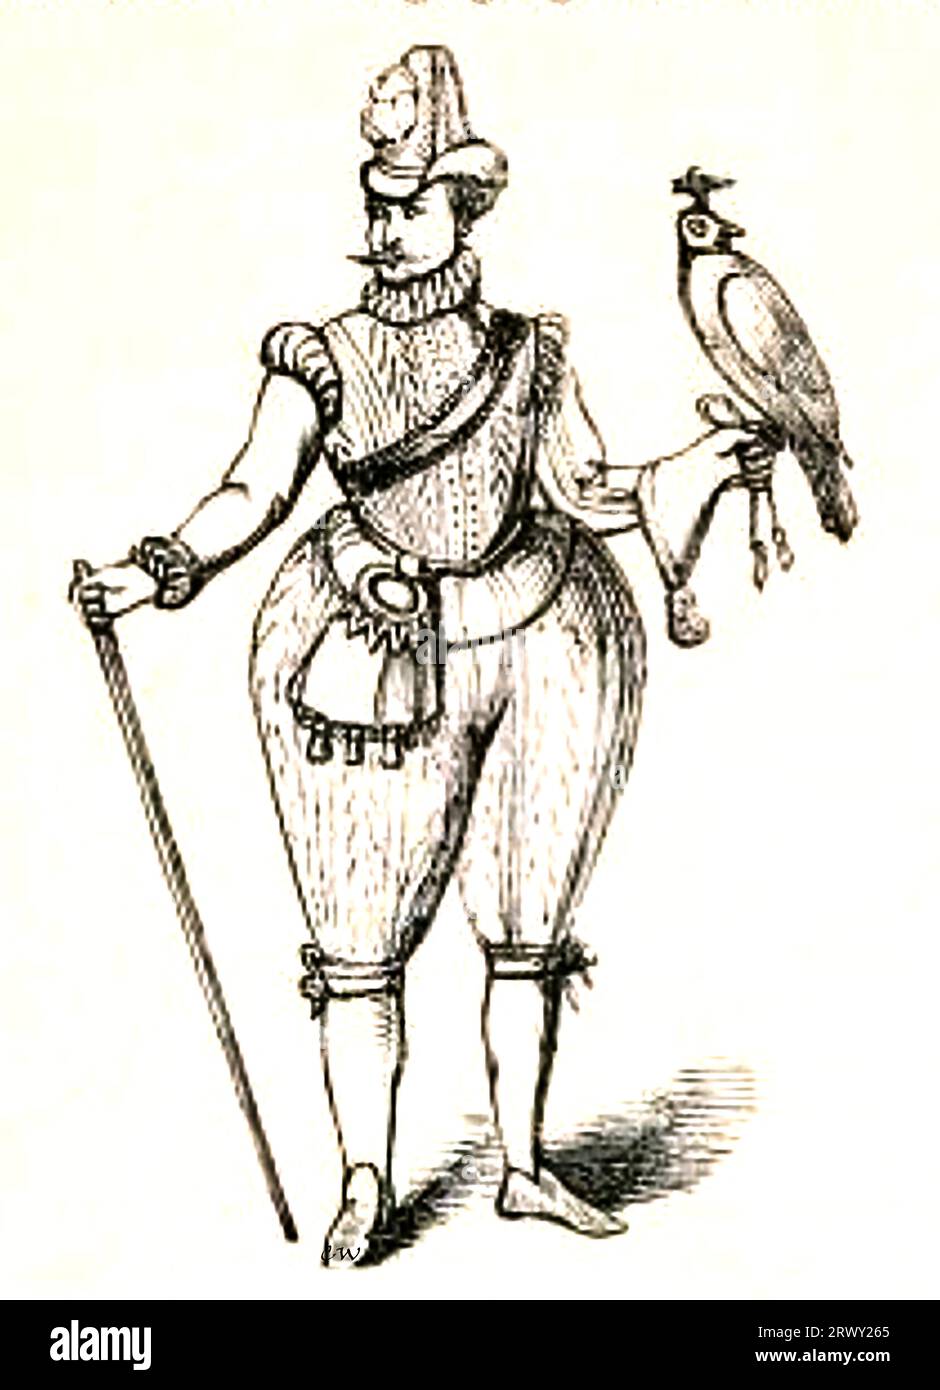 König Jakob I. von England trug Bombarden (ein Name, der von einer Art früher Kanonen oder Mörser stammt, die im Mittelalter und bald danach verwendet wurden) und hielt einen Falken, der für die Jagd verwendet wurde. Stockfoto